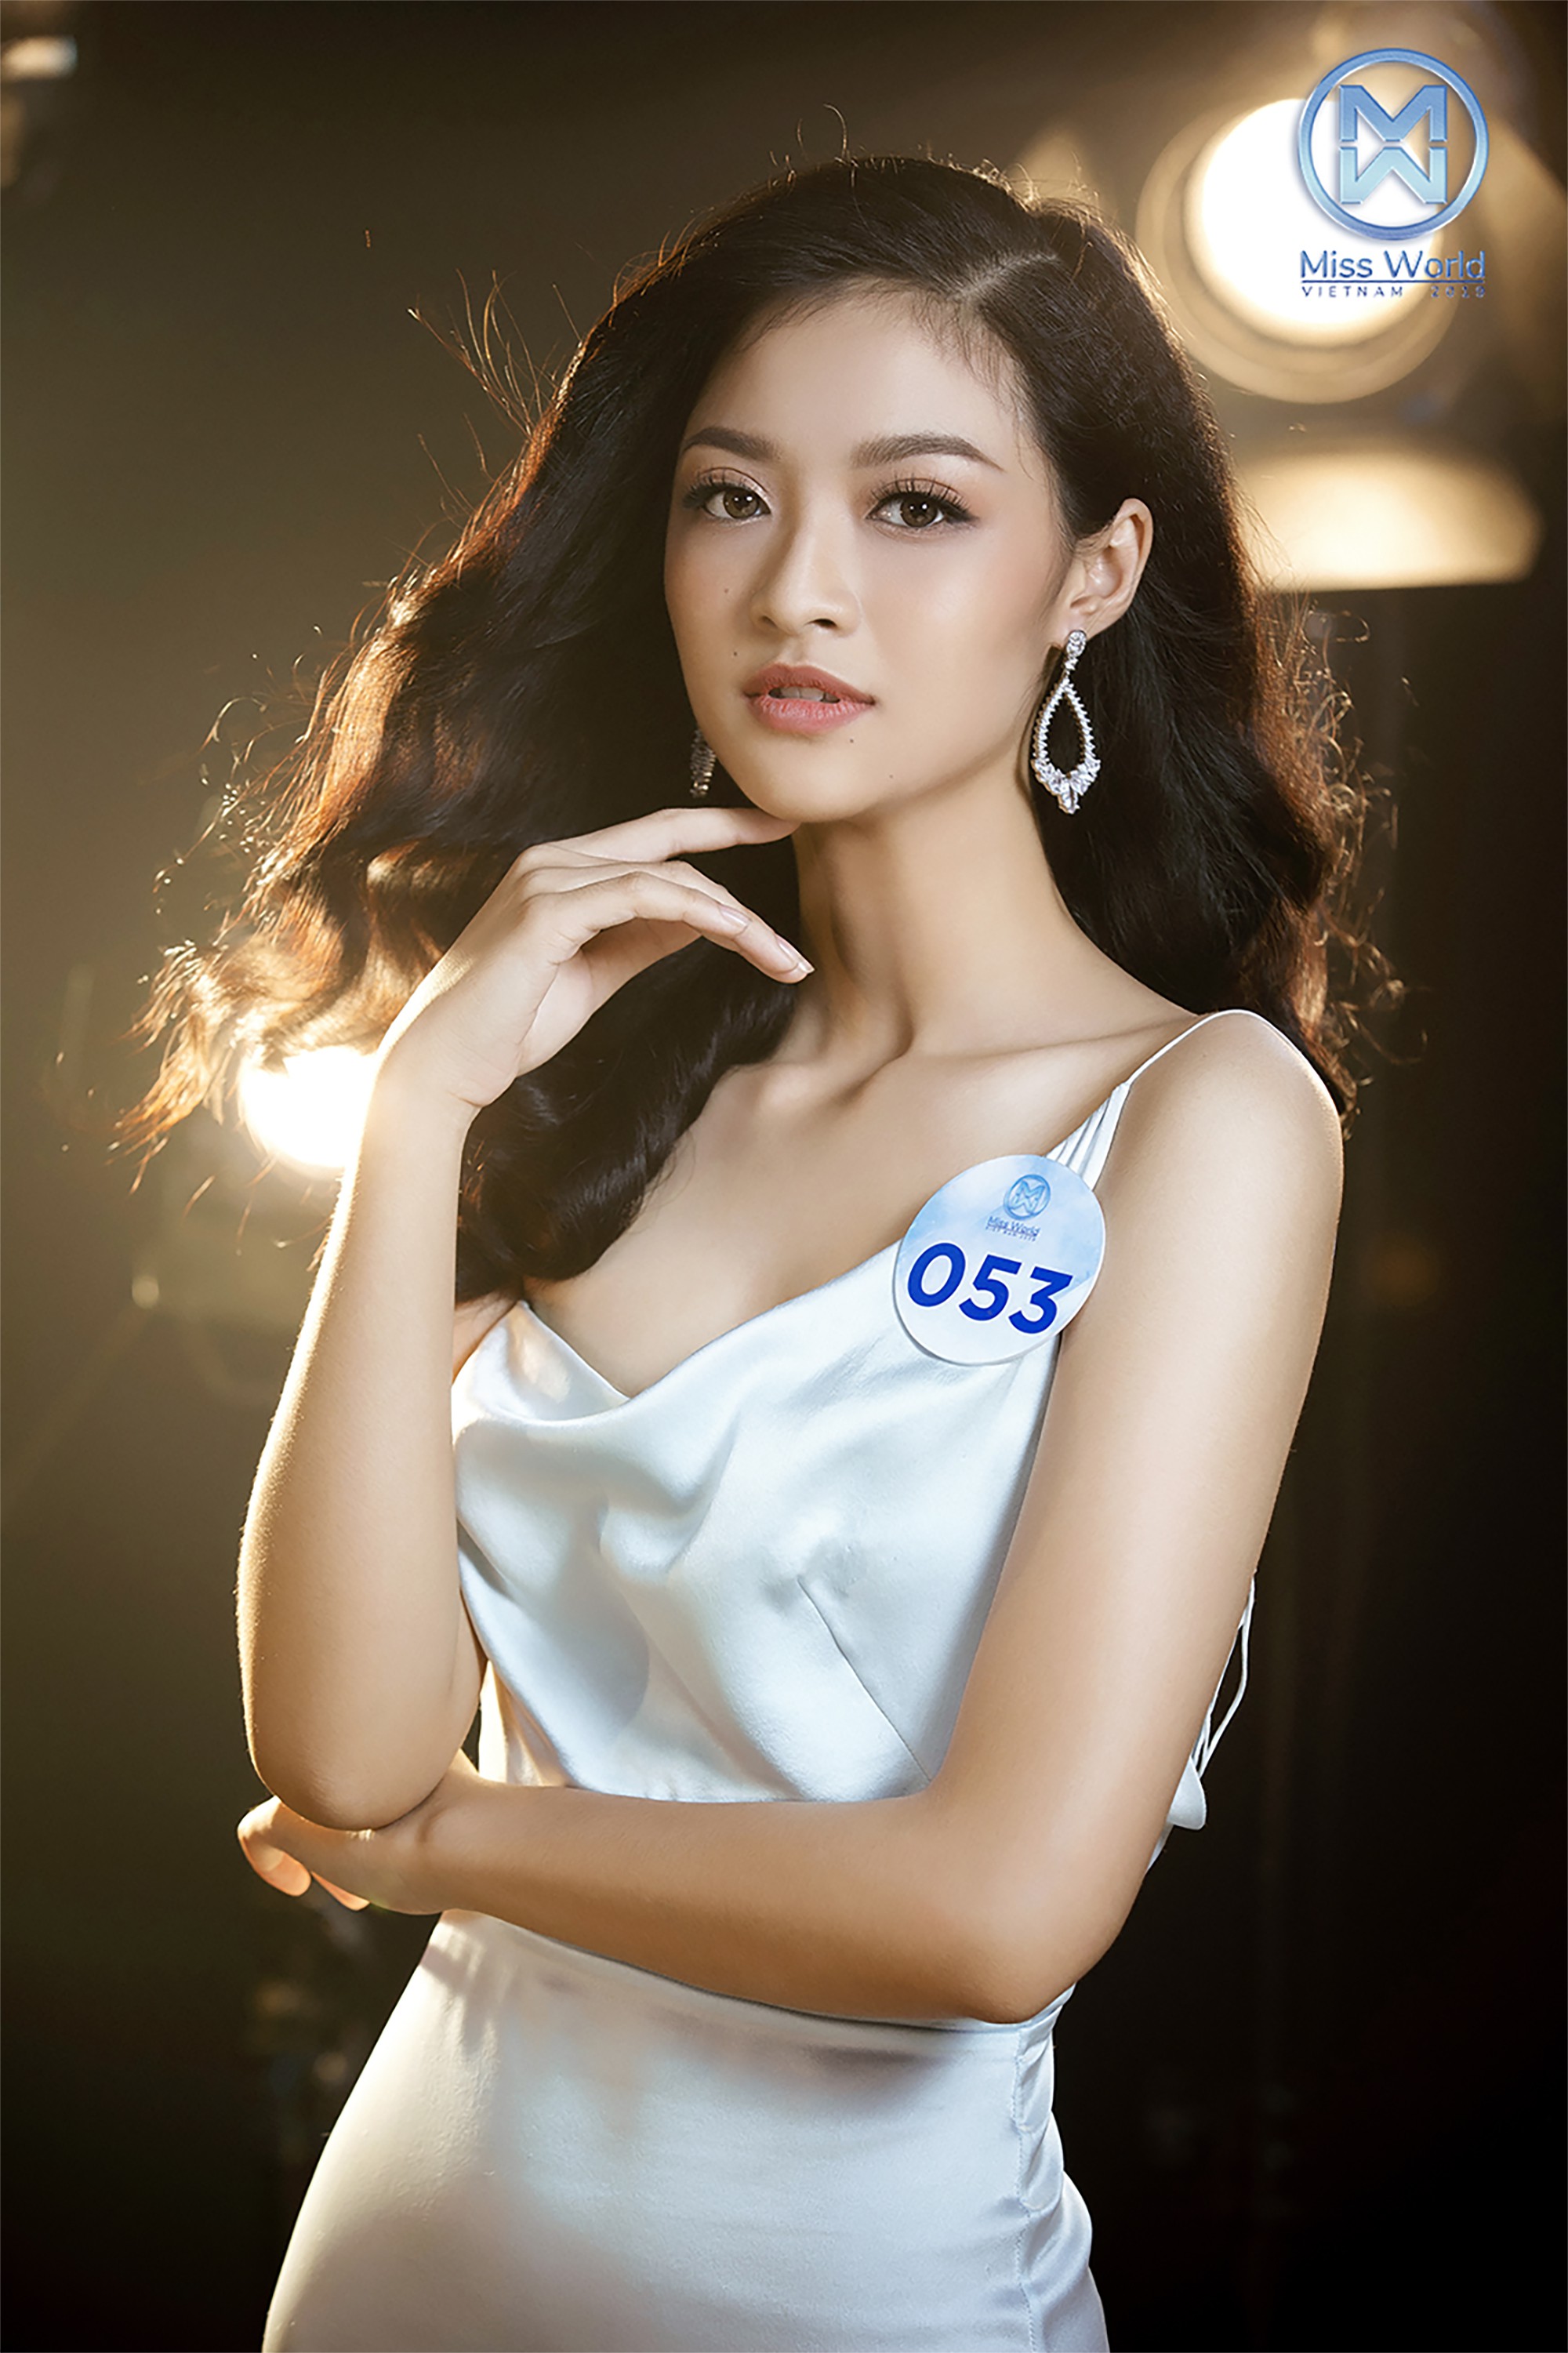 Miss World Việt Nam tung ảnh cực &quot;nuột nà&quot; của 34 người đẹp chung khảo phía Nam, tuyên bố đặc cách thí sinh vào thẳng Chung kết - Ảnh 2.